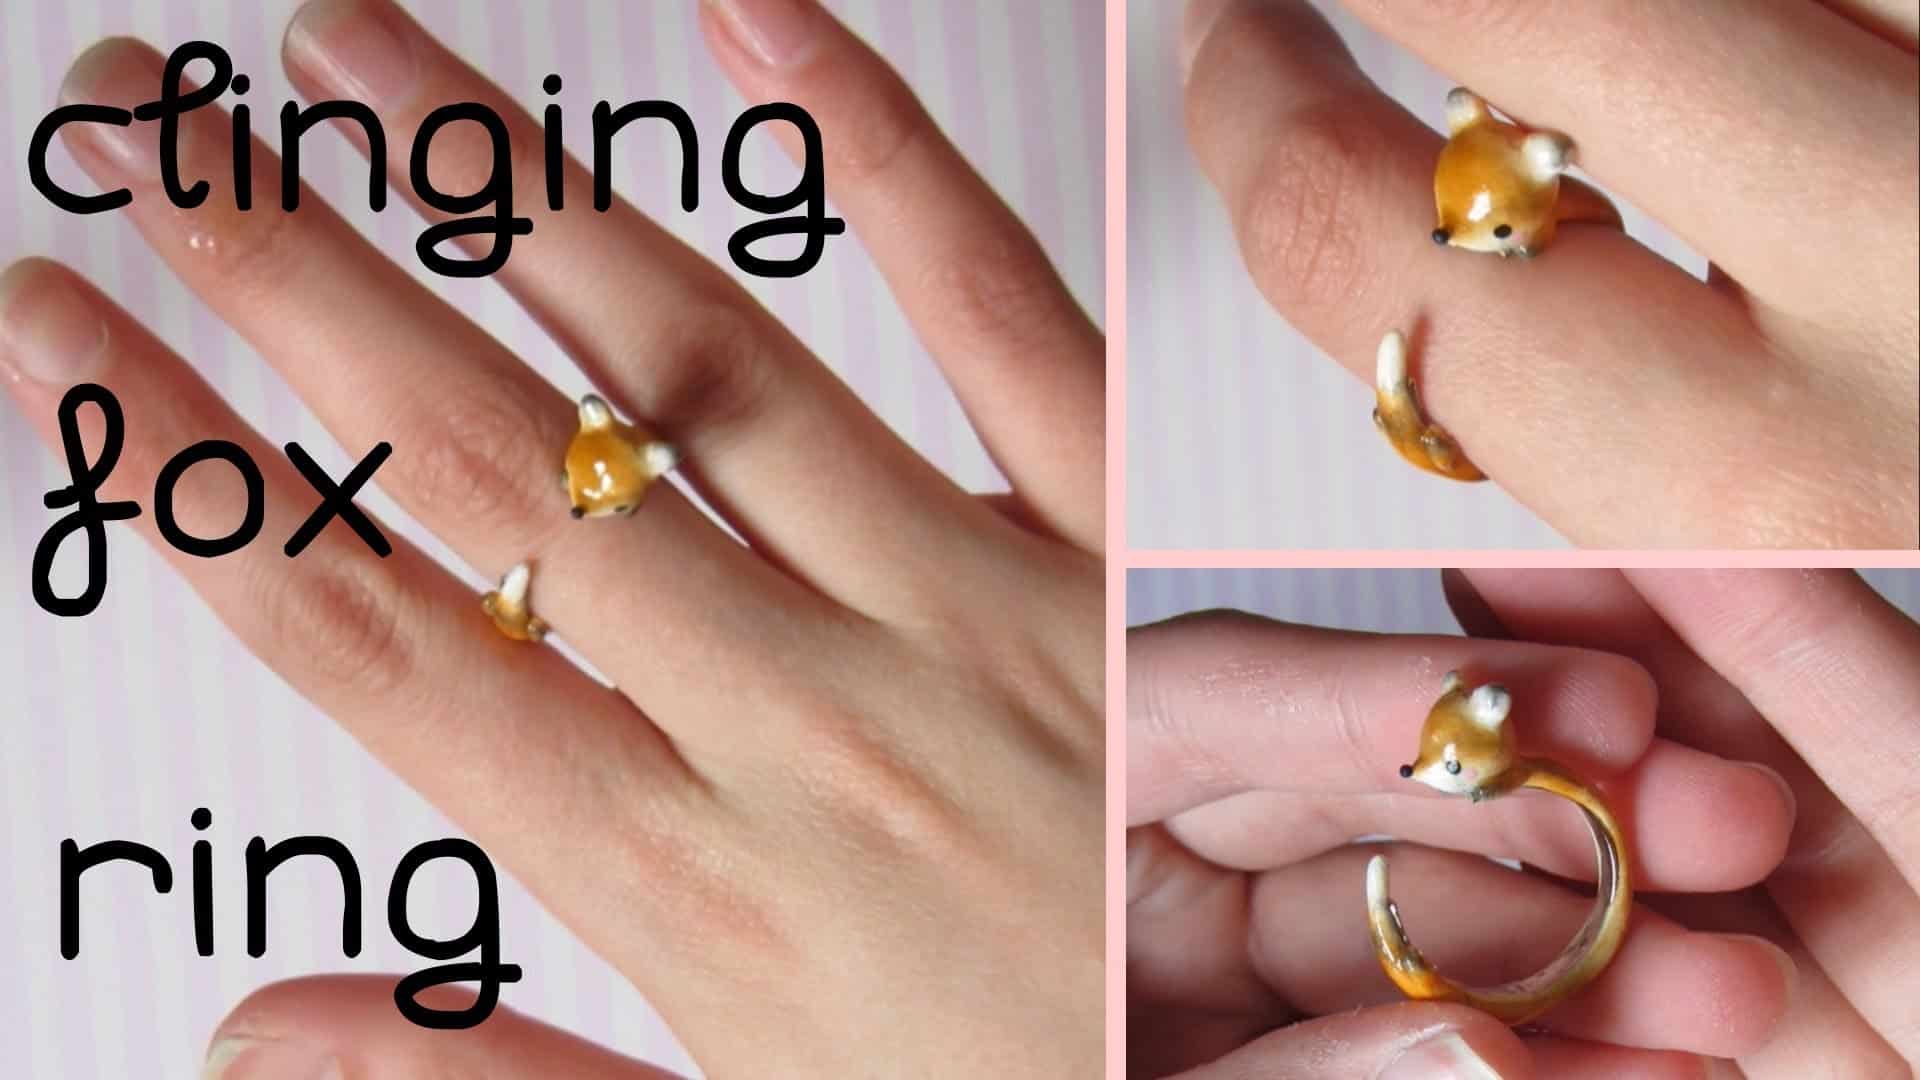 Clinging fox ring